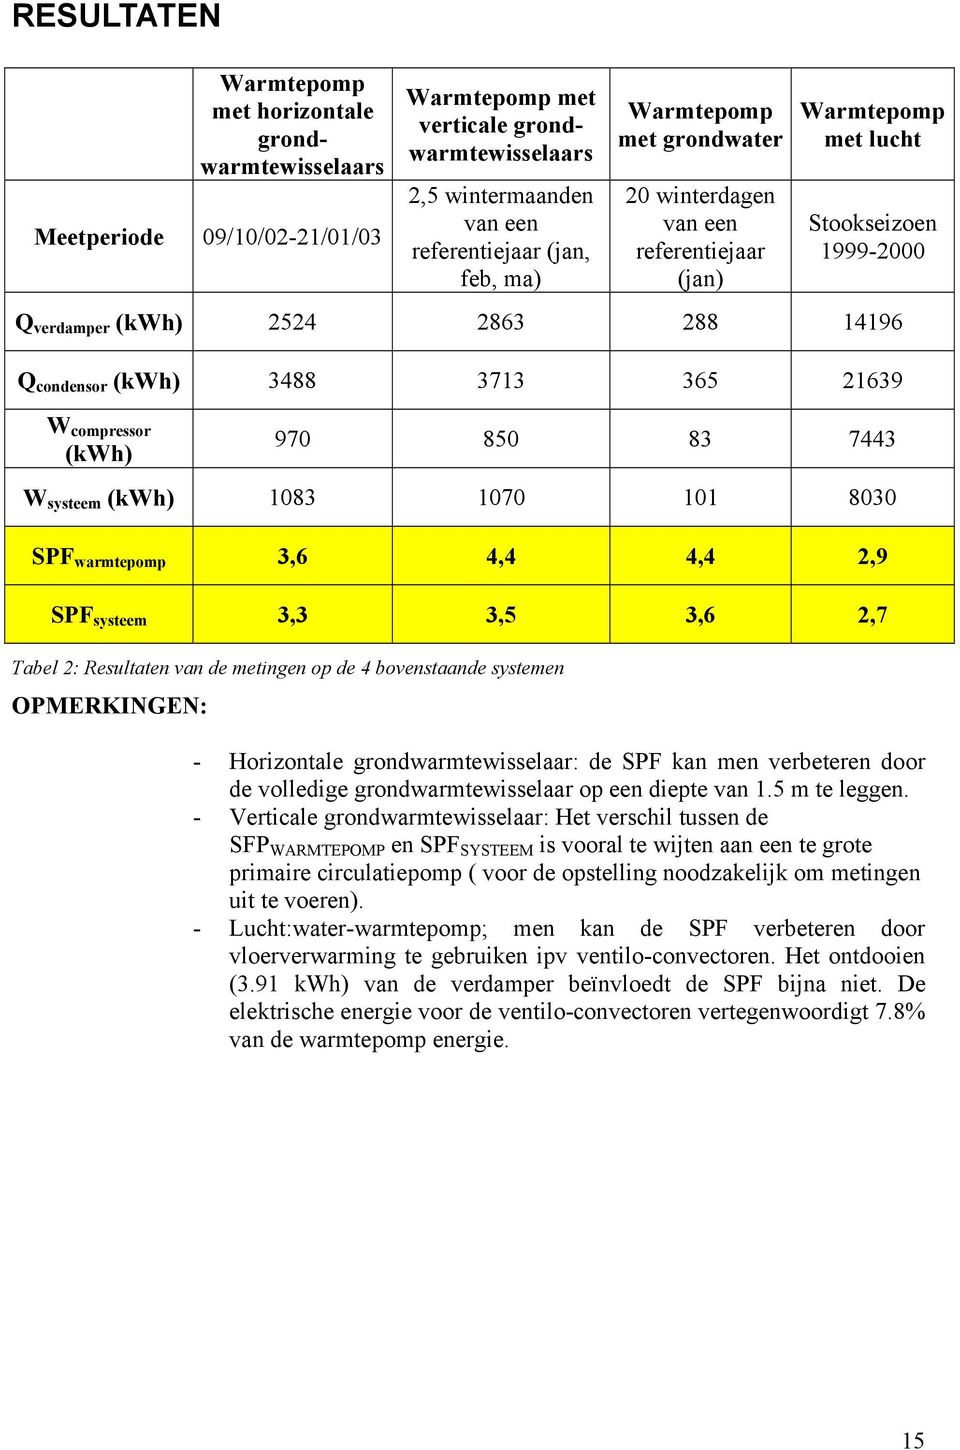 compressor (kwh) 970 850 83 7443 W systeem (kwh) 1083 1070 101 8030 SPF warmtepomp 3,6 4,4 4,4 2,9 SPF systeem 3,3 3,5 3,6 2,7 Tabel 2: Resultaten van de metingen op de 4 bovenstaande systemen